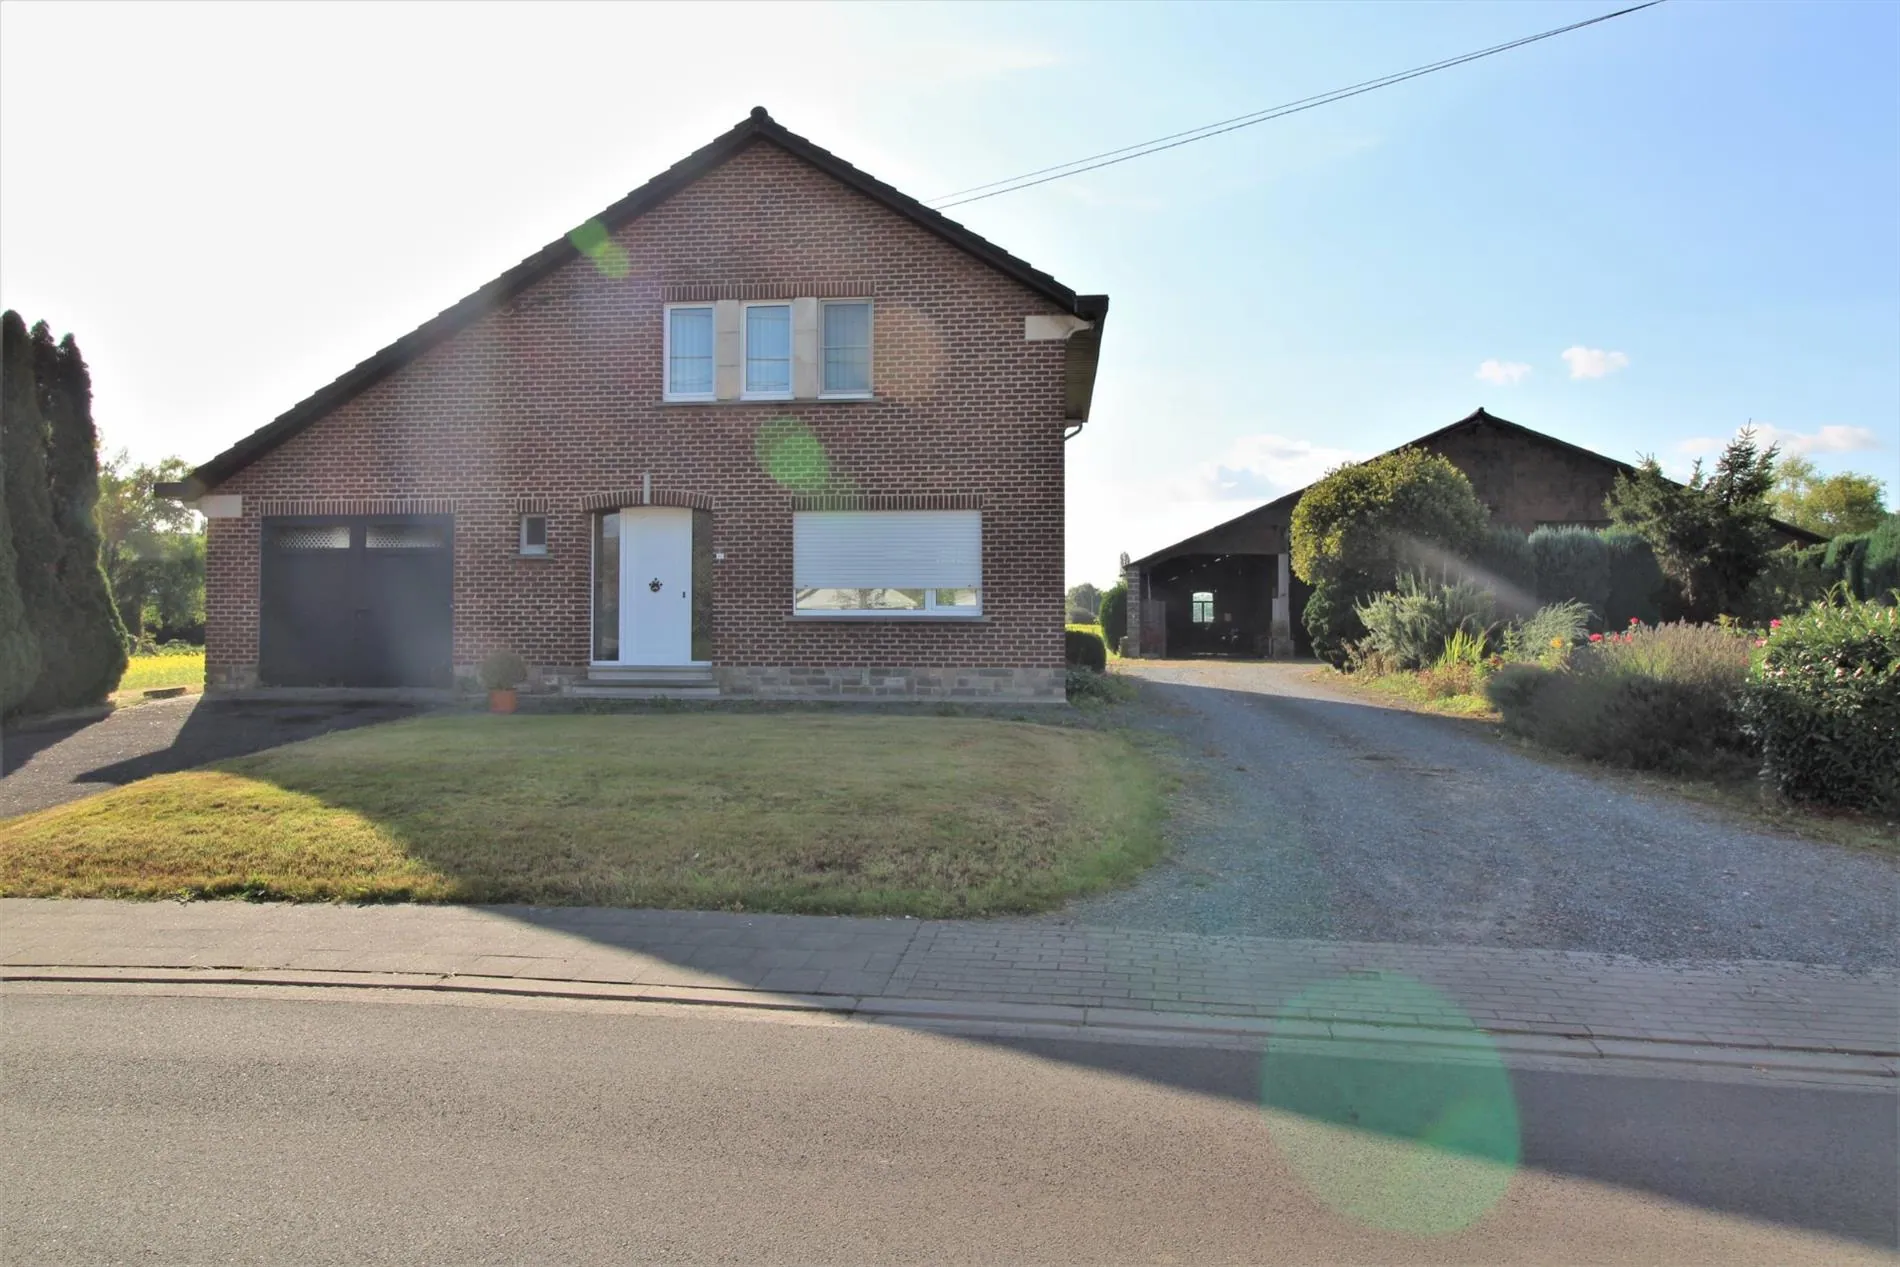 Verkocht: IN OPTIE - Te renoveren woning loods en weilanden op 4,5ha te Wilsele (Leuven/Vlaams-Brabant) - Wilsele 3012 -